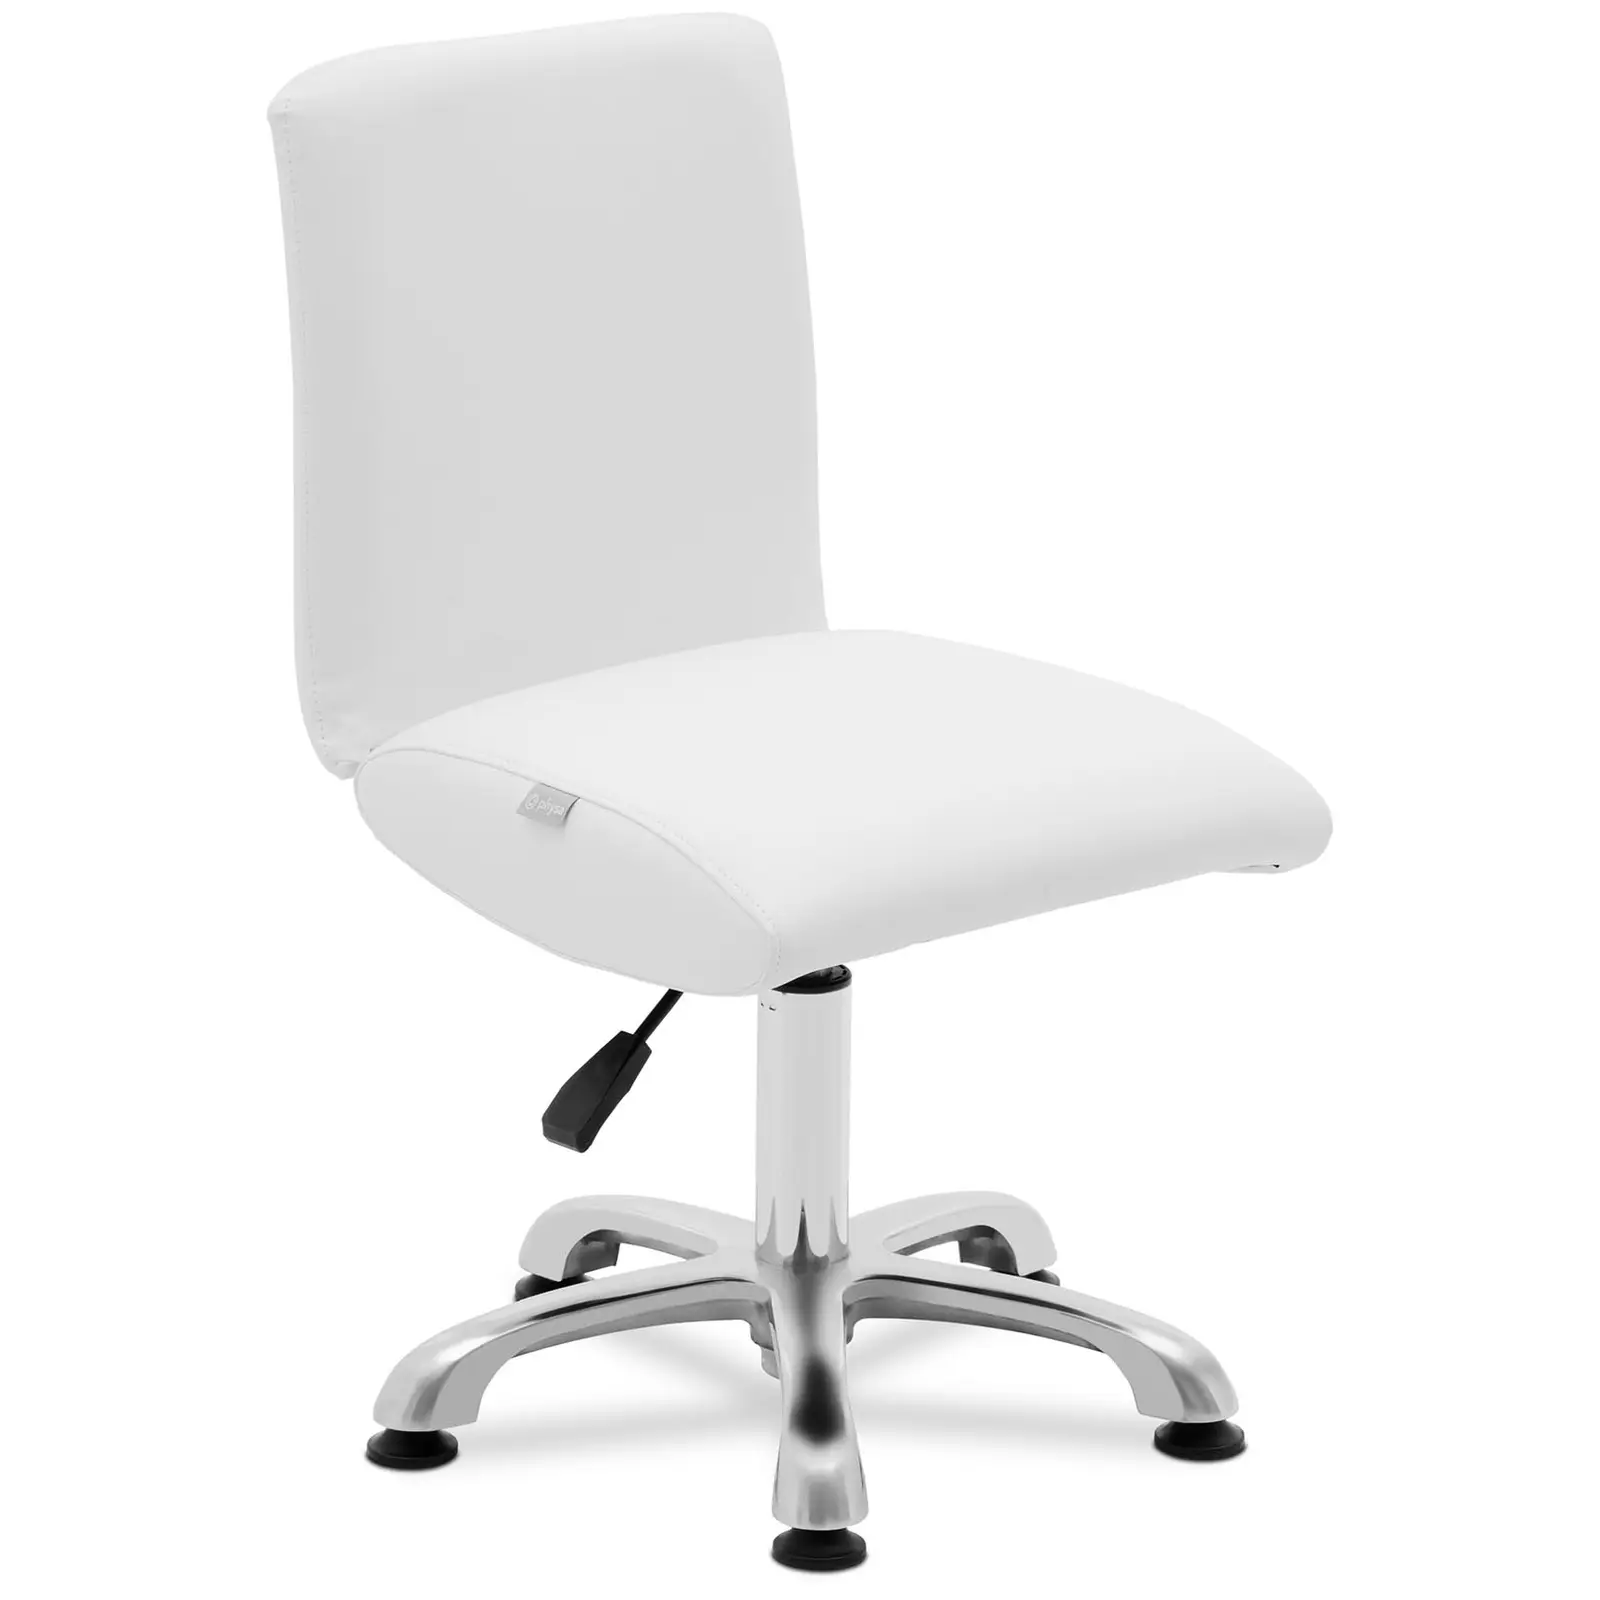 Darbo kėdė su atlošu - 38 - 52 cm - 150 kg - balta